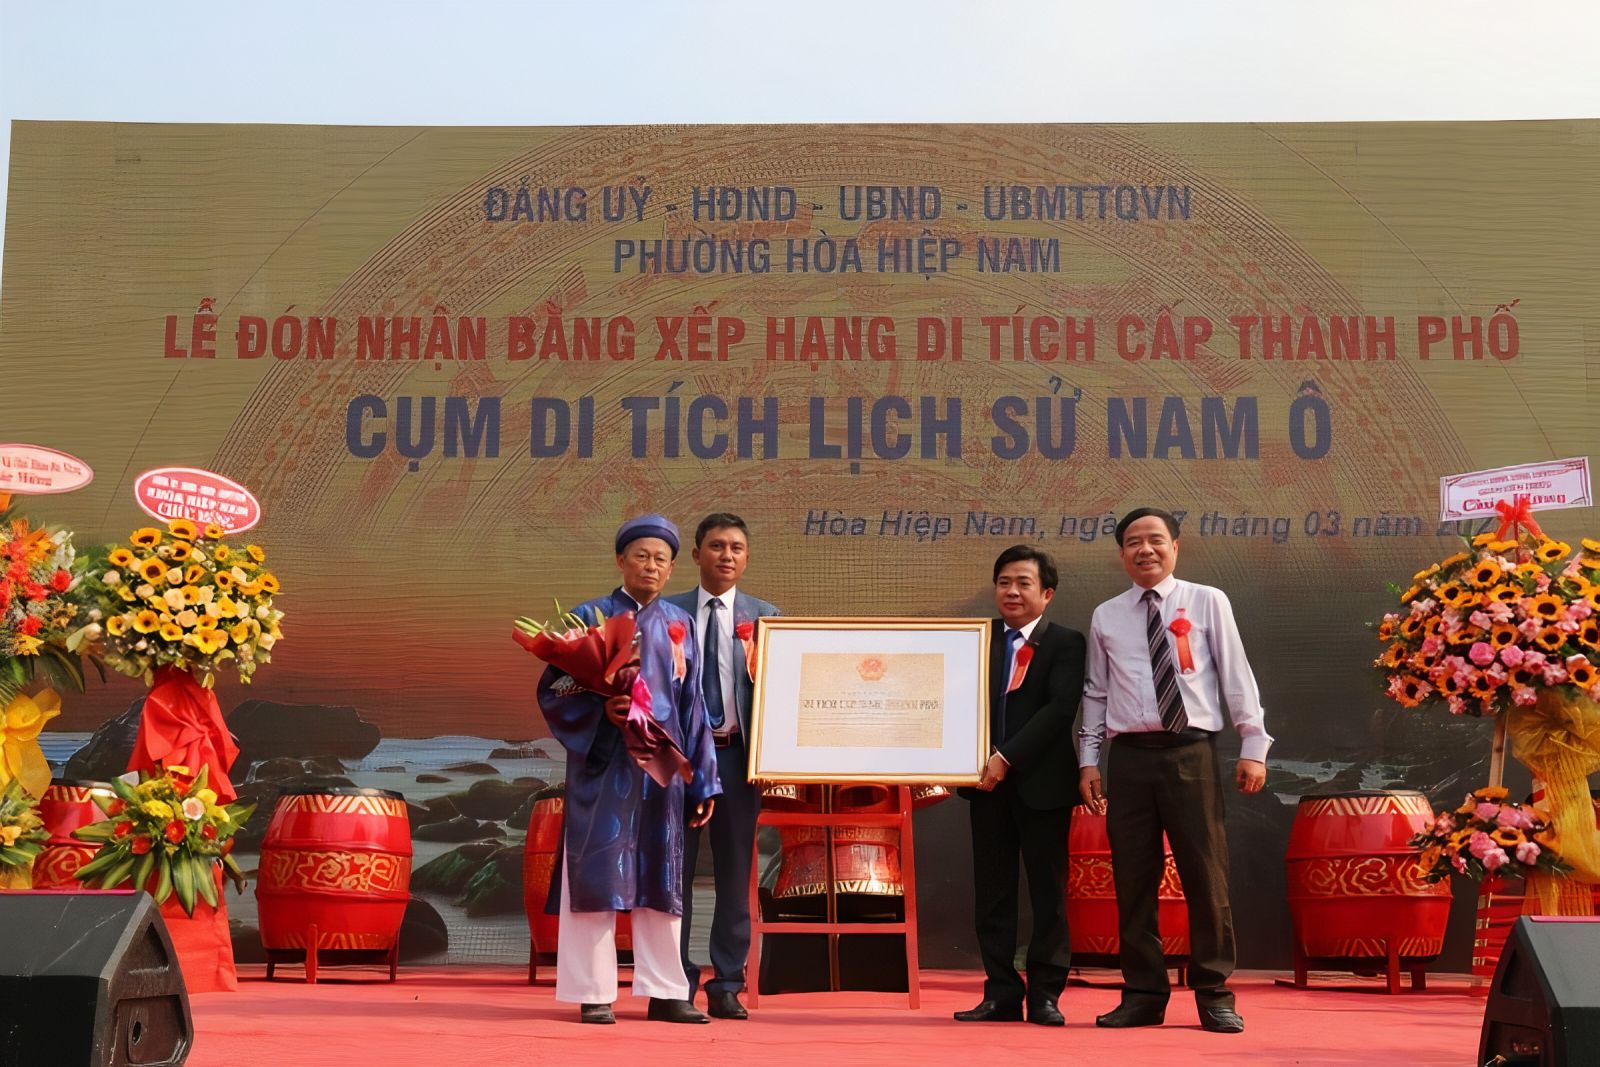 Cụm di tích lịch sử Nam Ô đón nhận Bằng xếp hạng di tích cấp thành phố